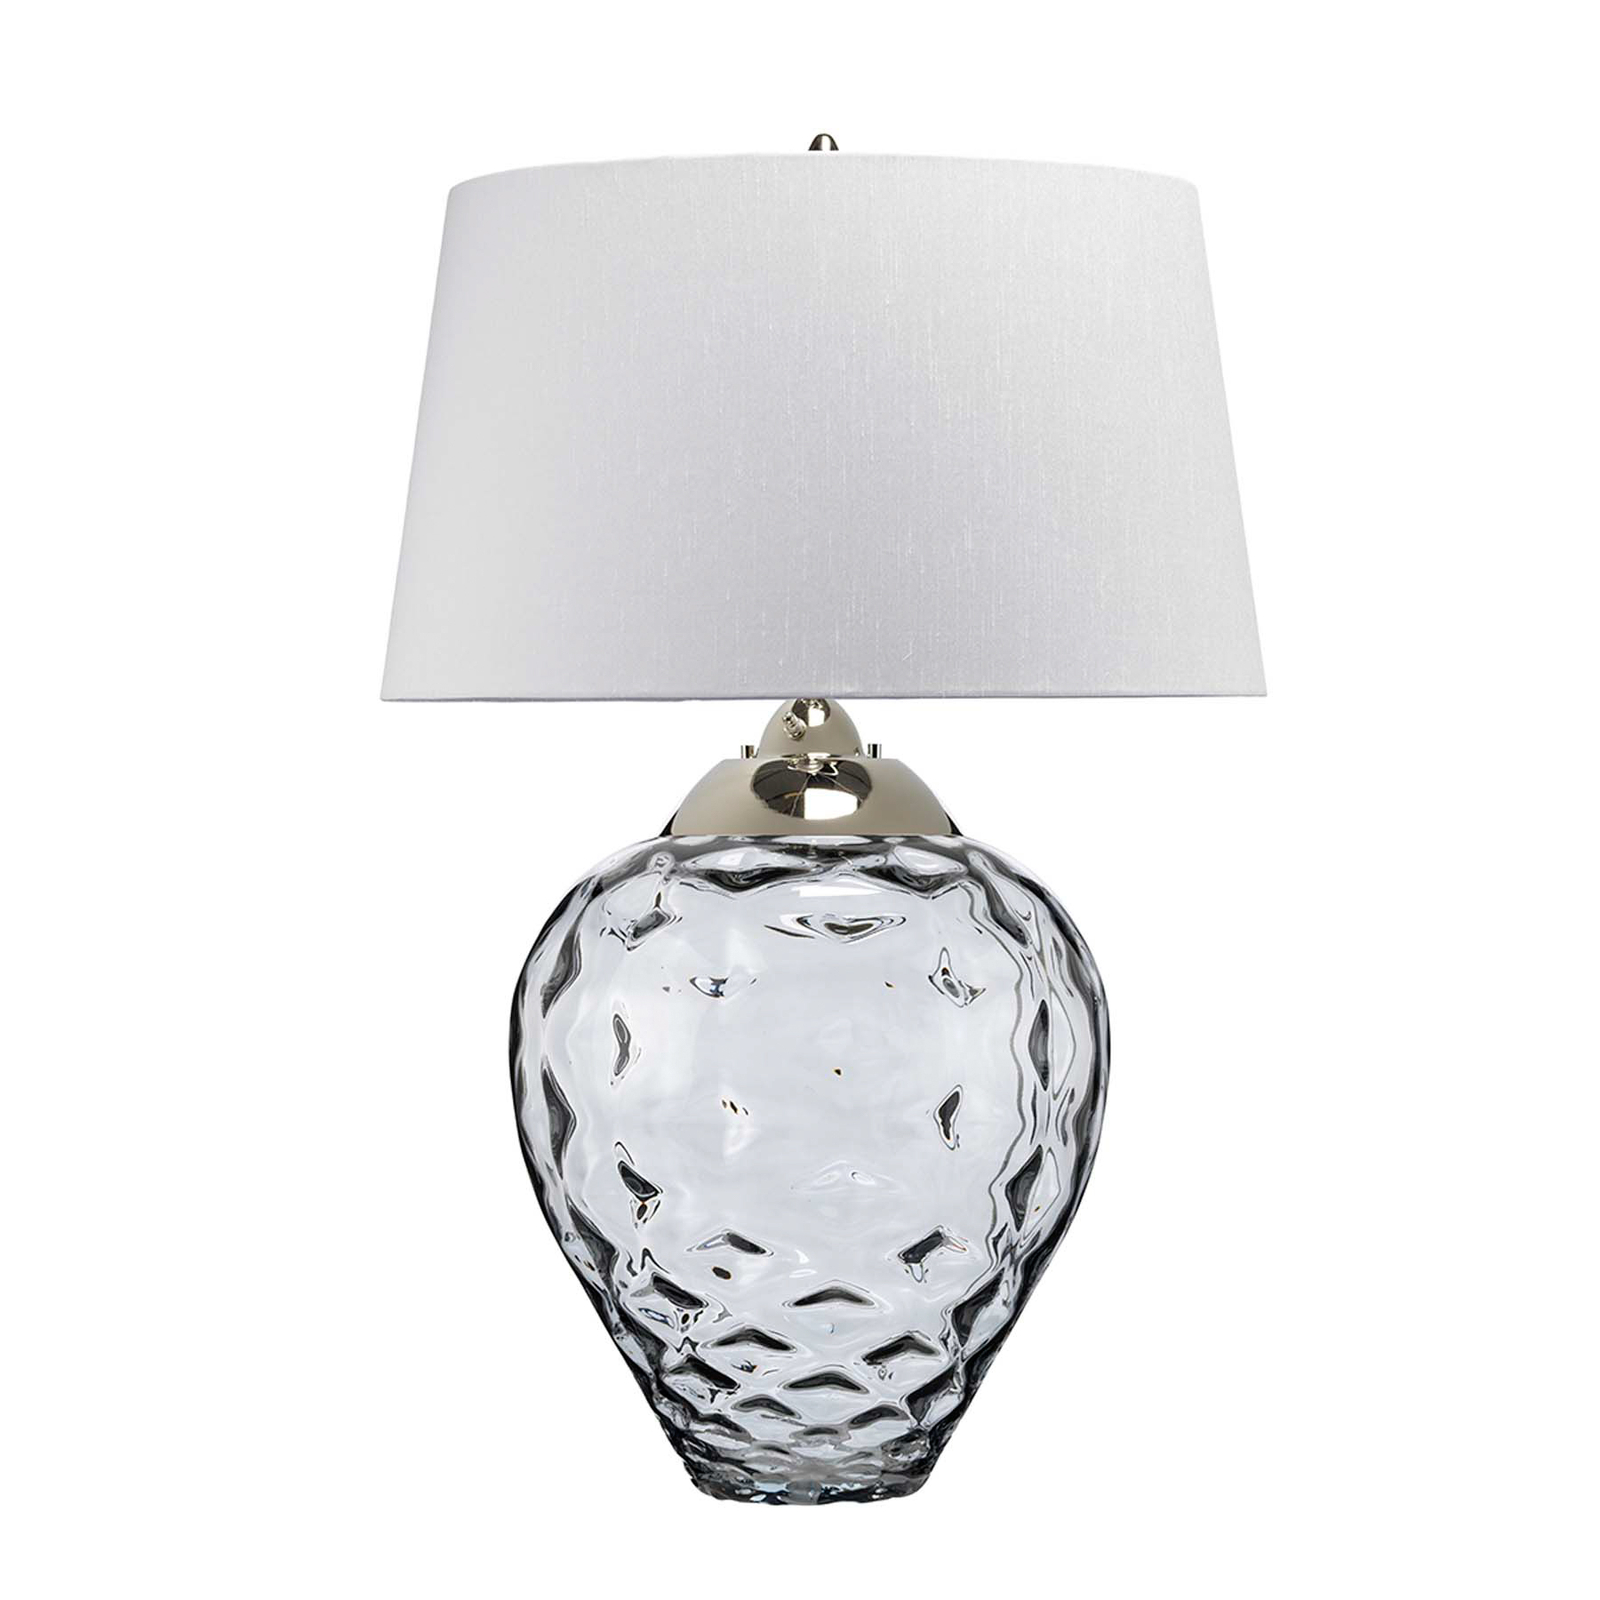 Samara tafellamp, Ø 51 cm, grijs, stof, glas, 2-lamps